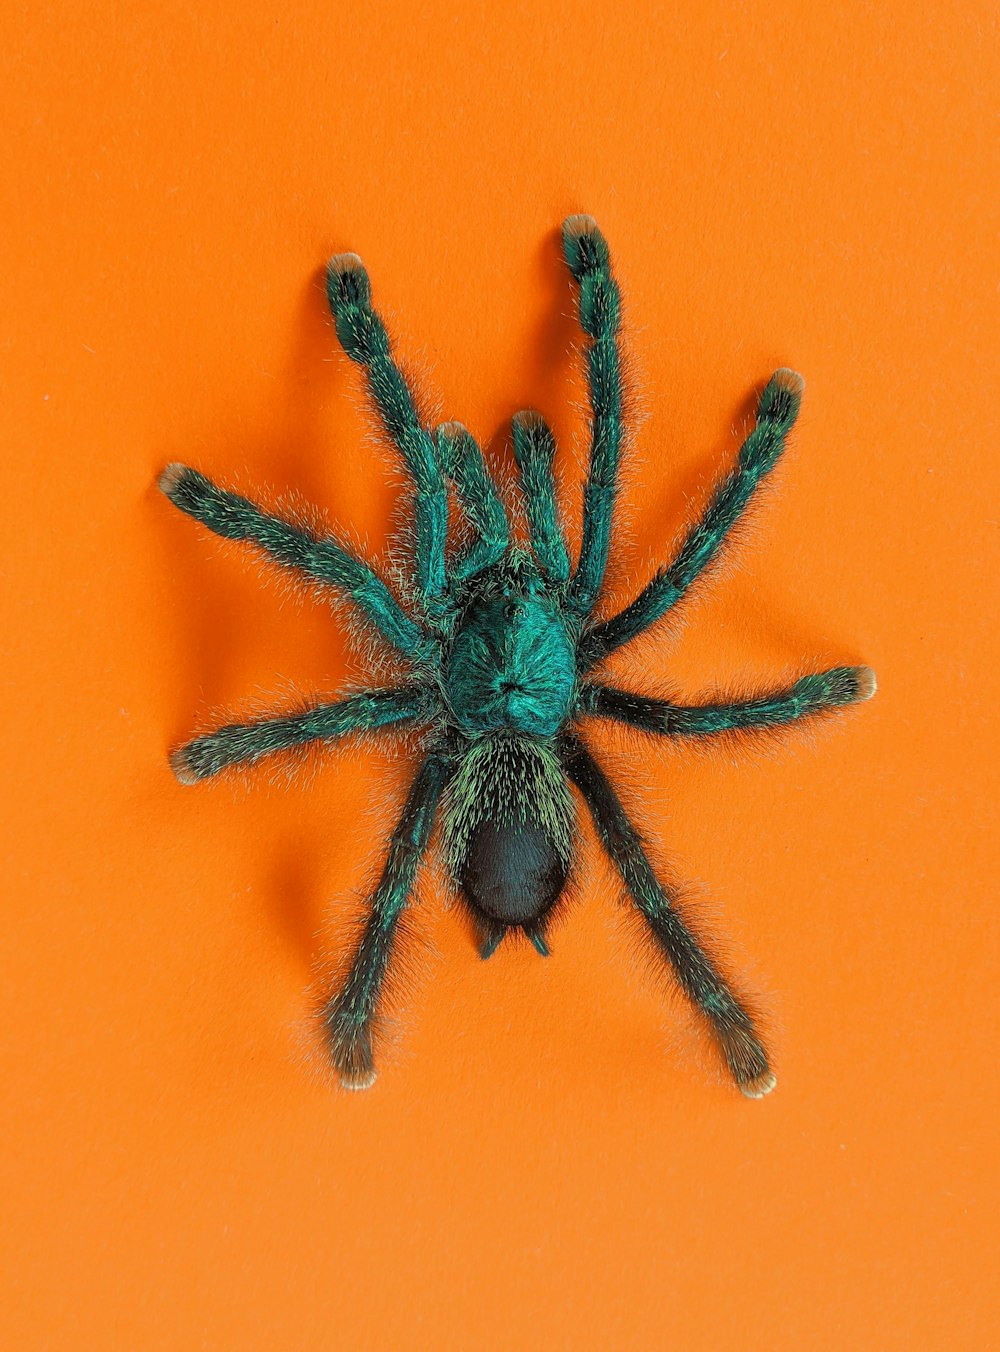 araignée noire sur surface orange